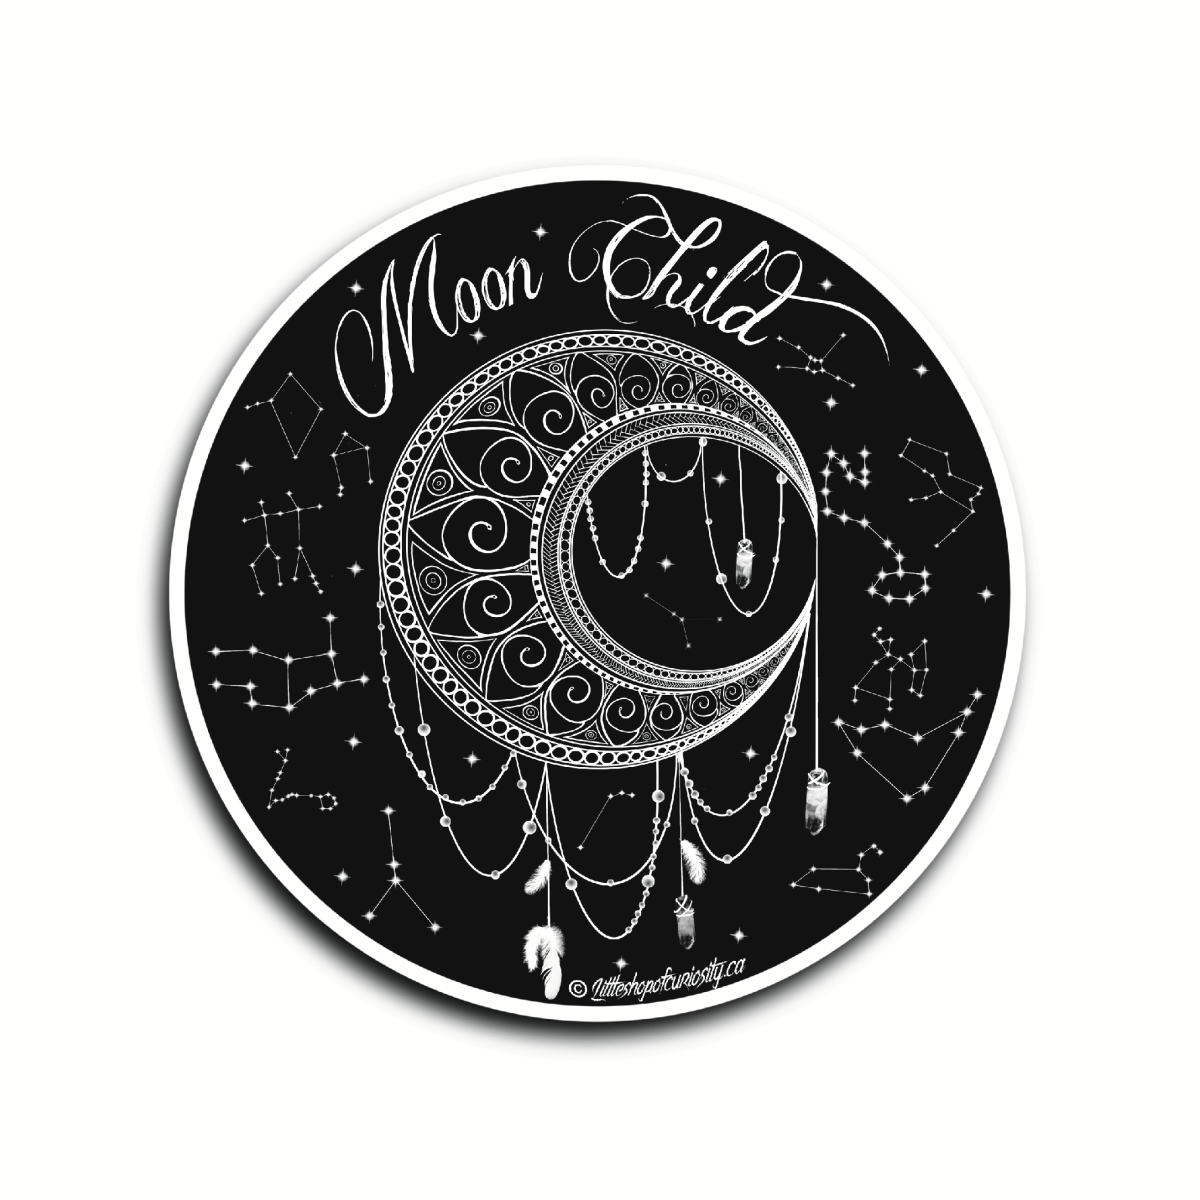 Moon Child Sticker - Black & White Sticker - Little Shop of Curiosity